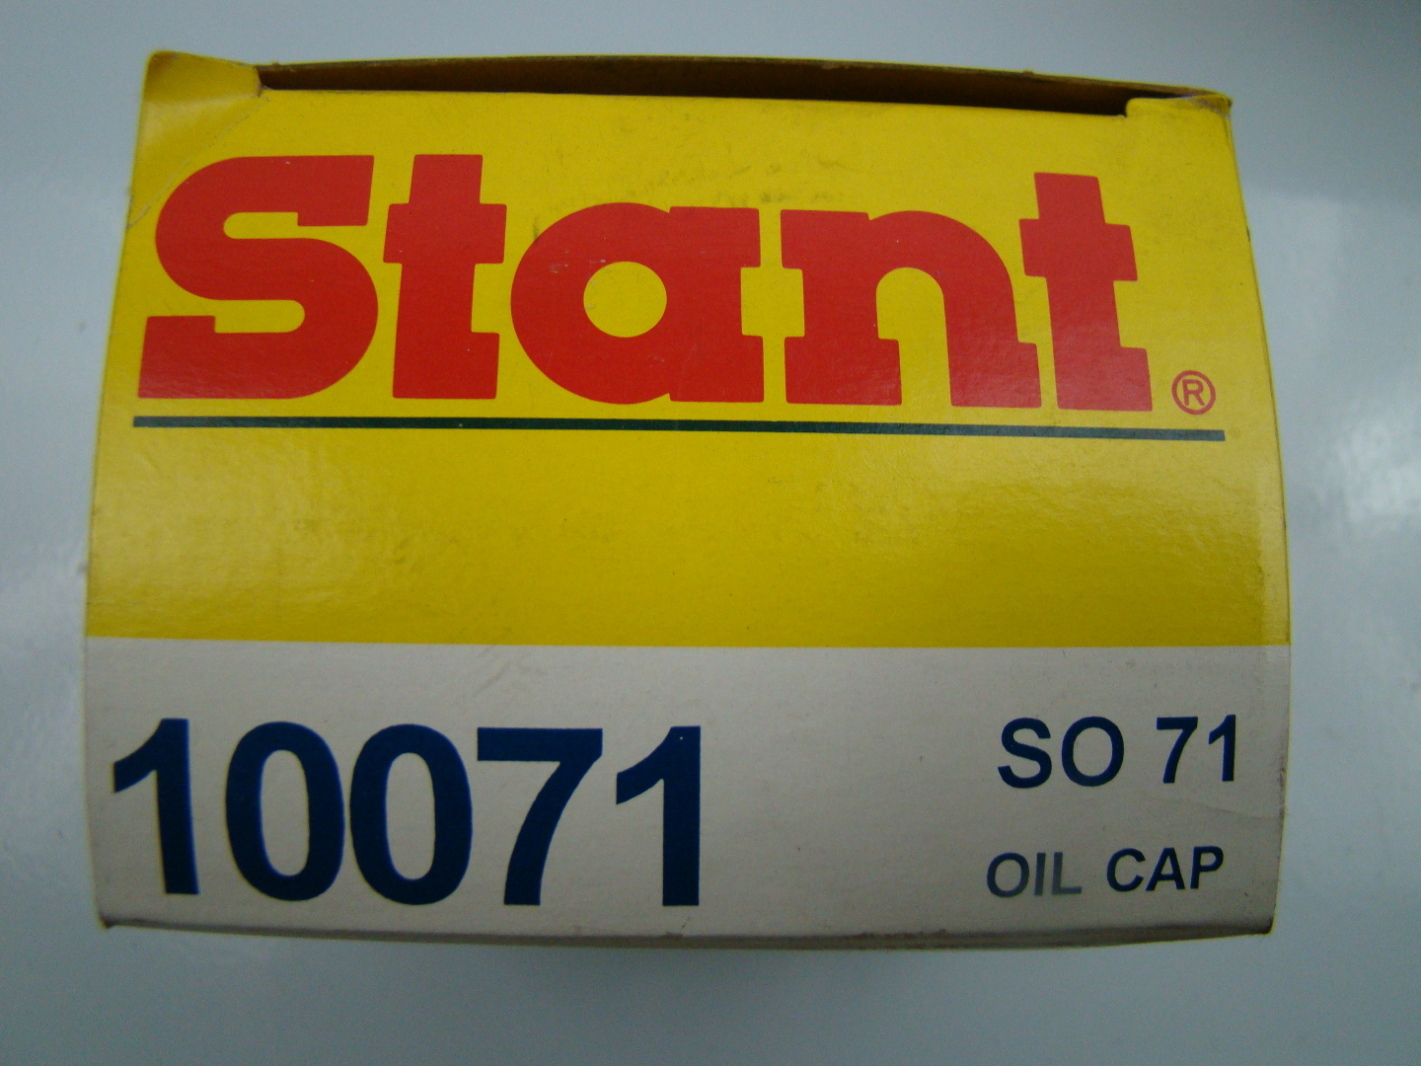 jf05675-stant-oil-cap-10071-4.jpg